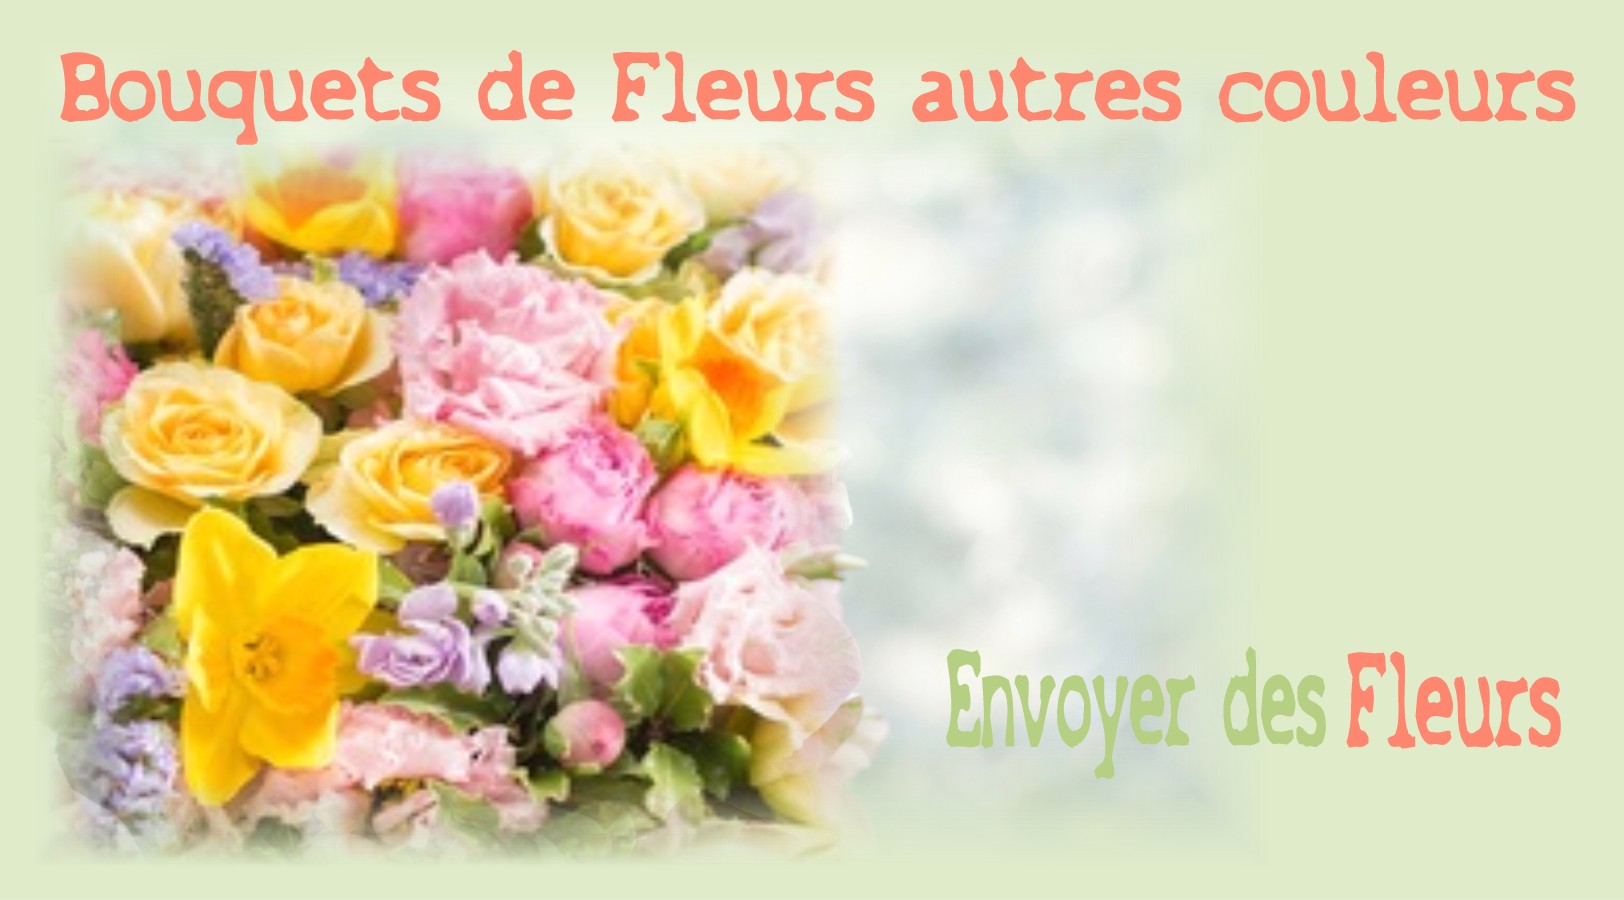 BOUQUETS DE FLEURS AUTRES COULEURS - FLEURISTE LYON (69) - ENVOYER DES FLEURS